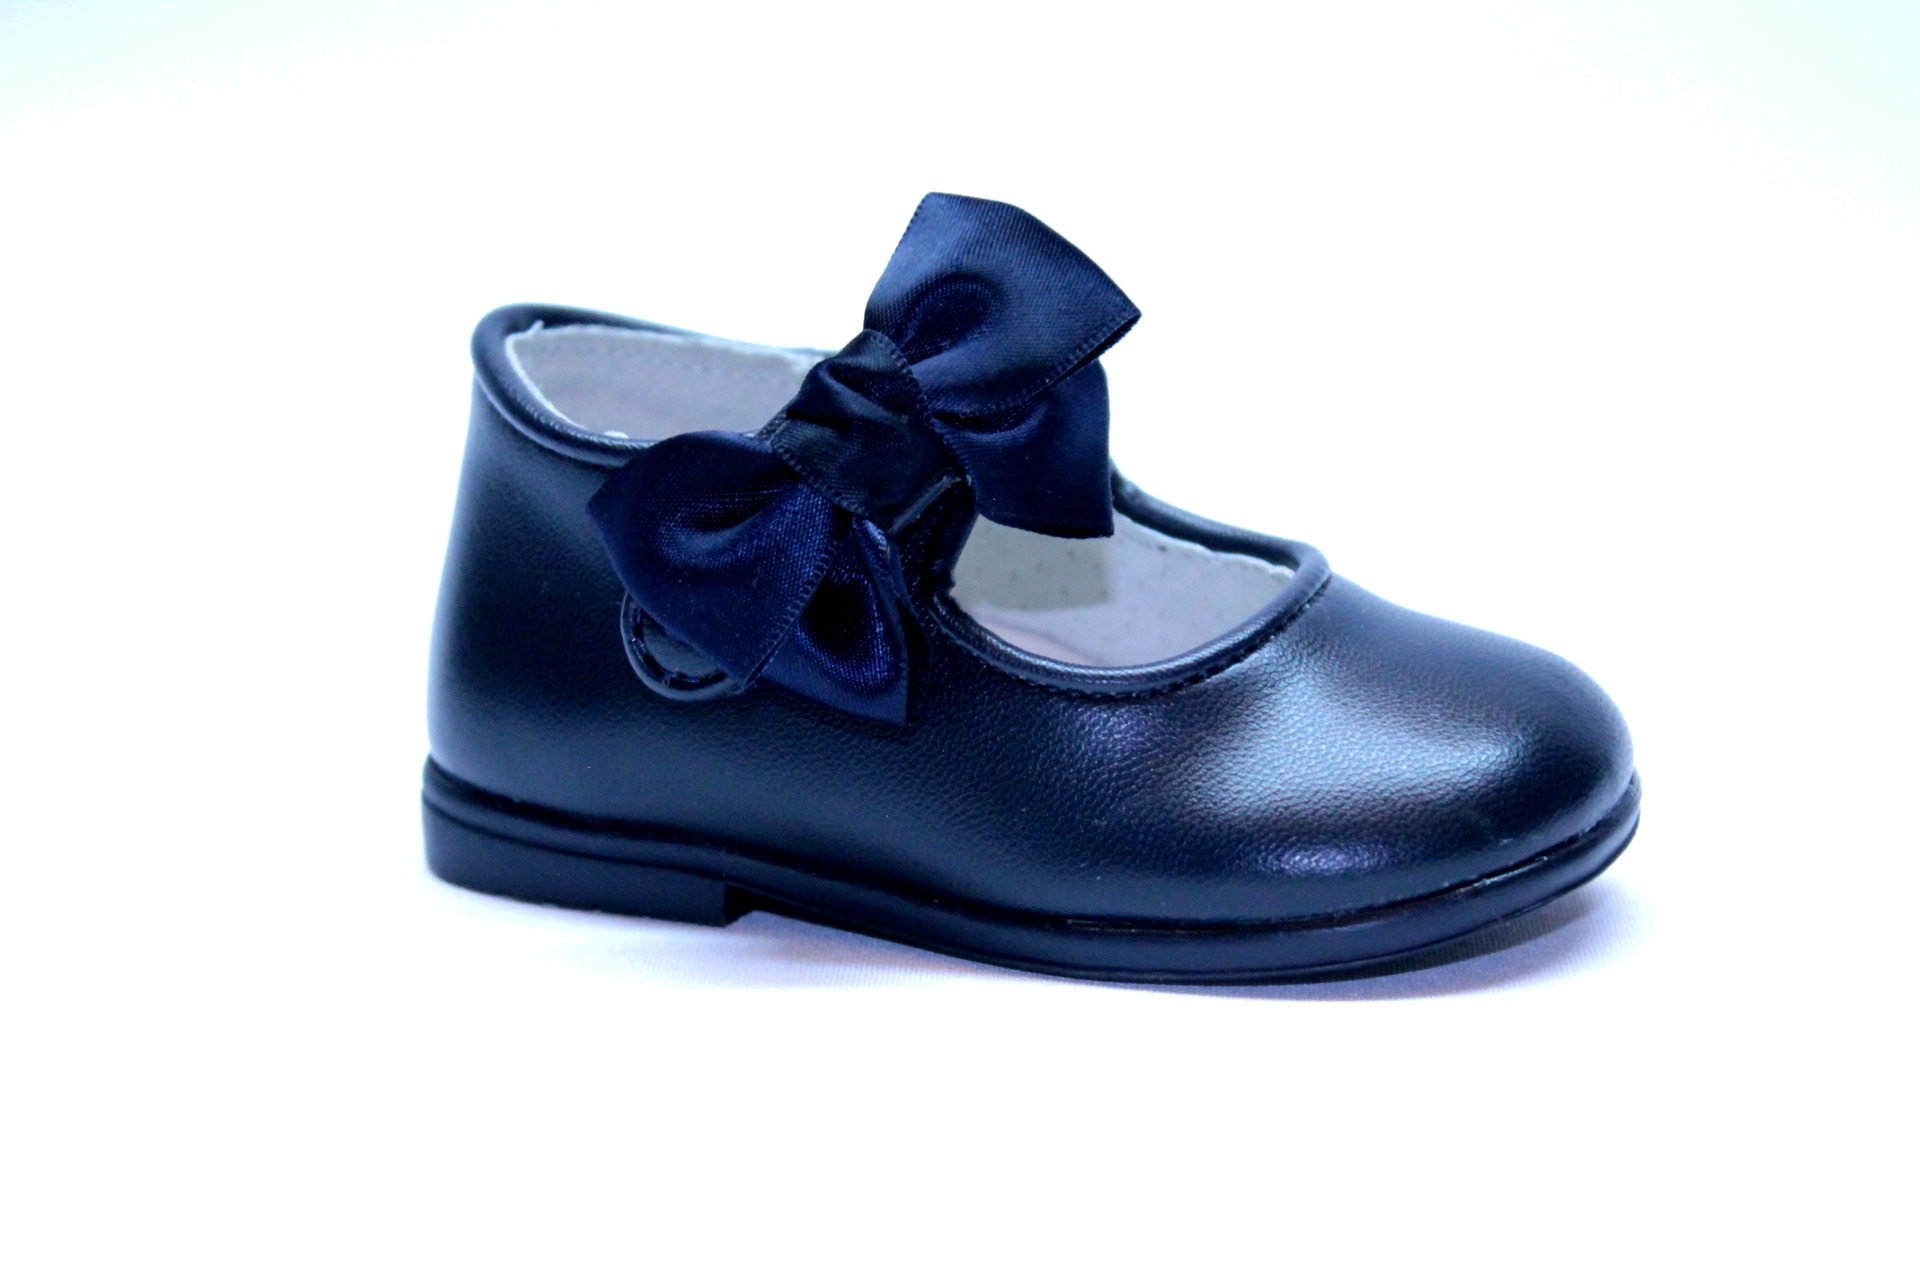 Zapato niña piel azul marino. - Zapatos Aragón